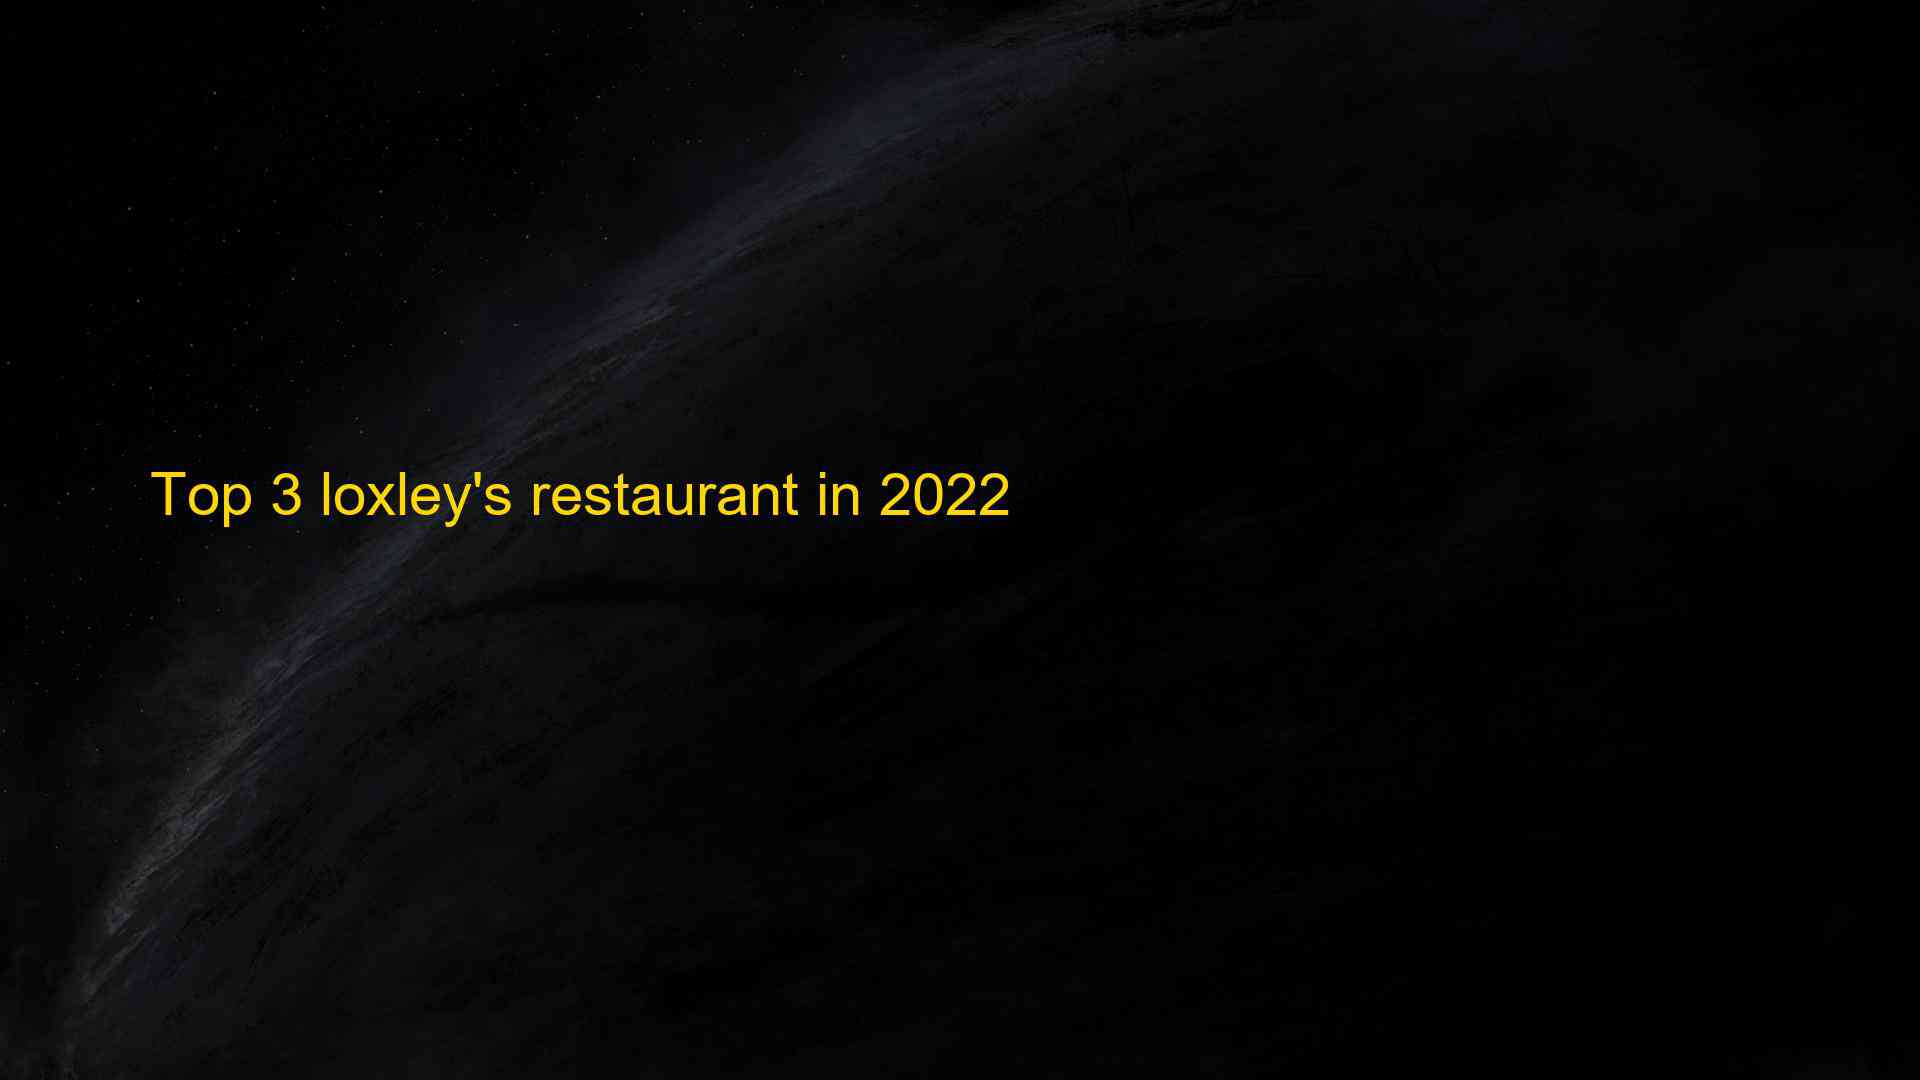 Top 3 loxleys restaurant in 2022 1663405576